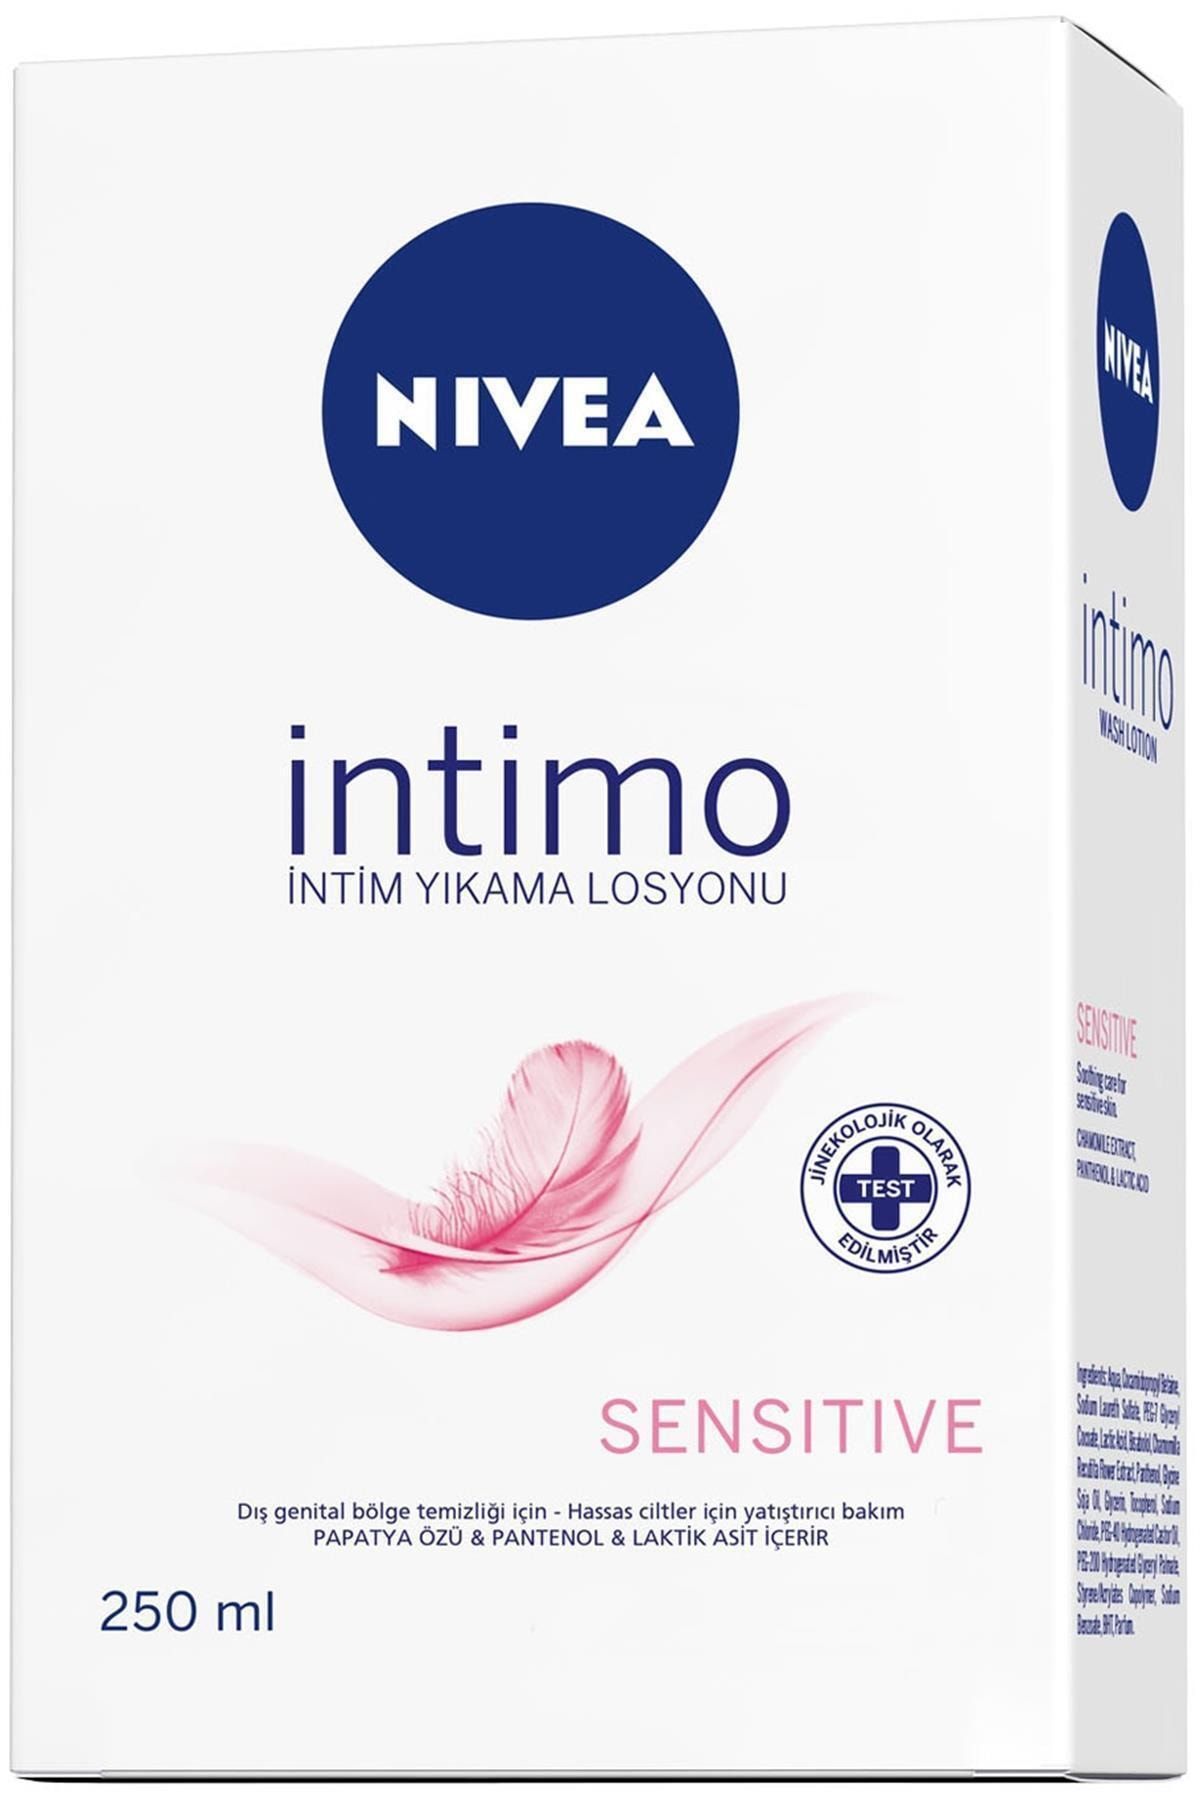 NIVEA Sensitive Intim Yıkama Losyonu 250 Ml Kategori: Intim Bakım Ürünü